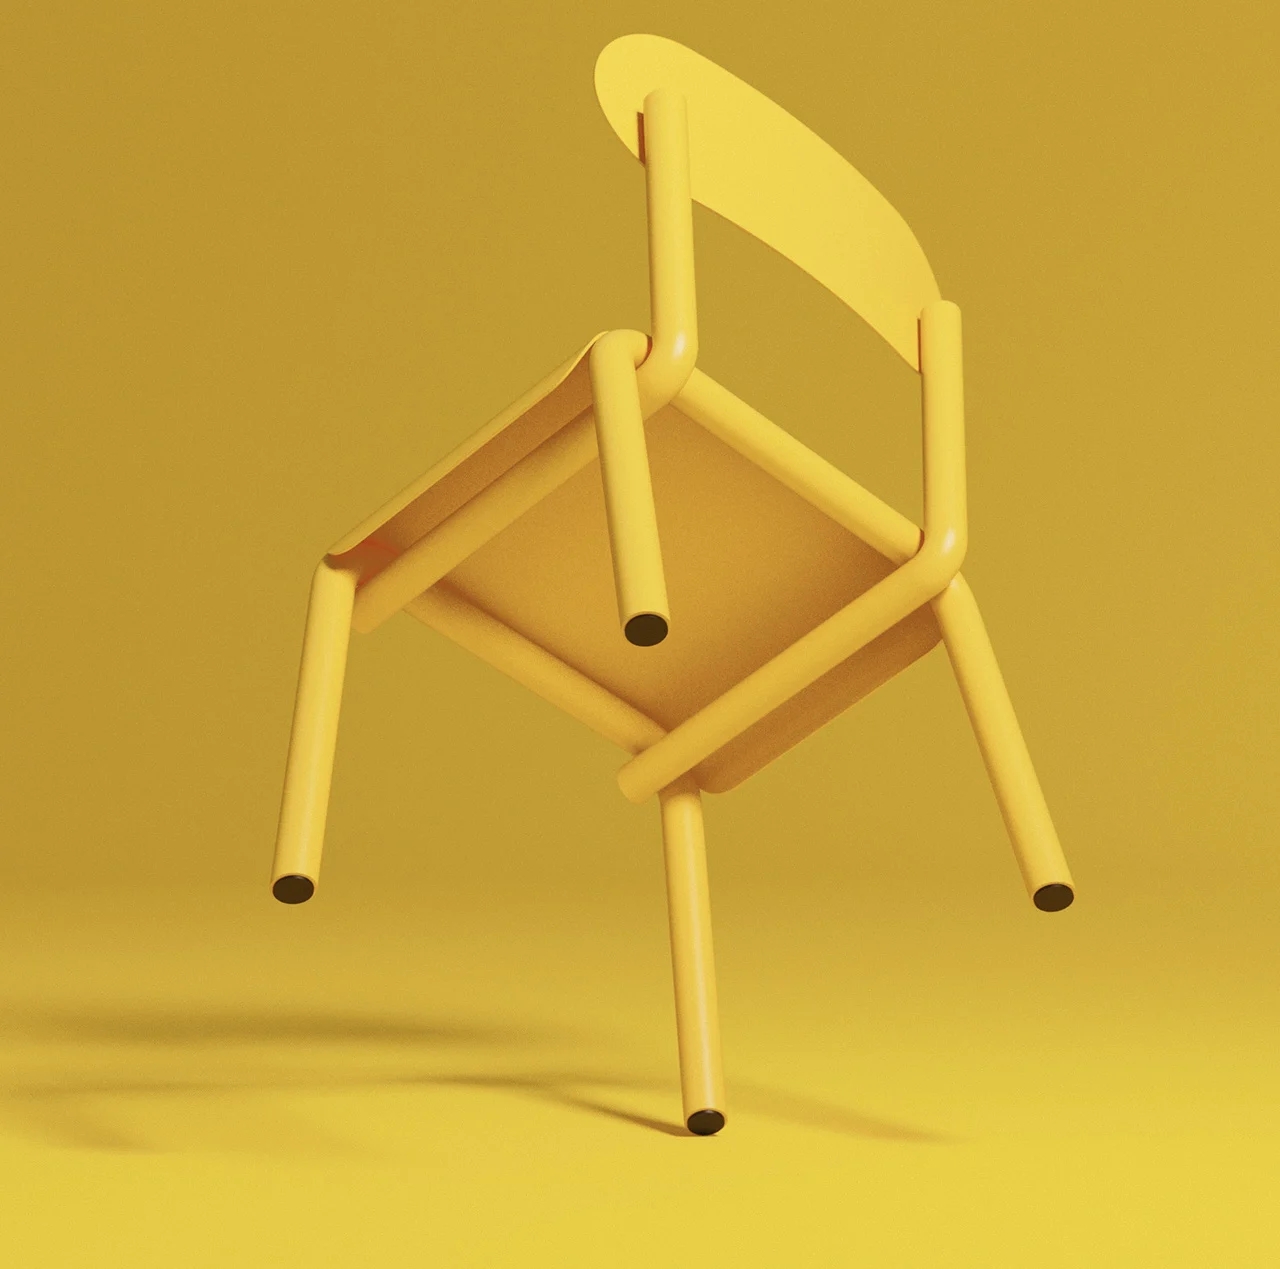 椅子特殊造型__金属椅子的结构说明